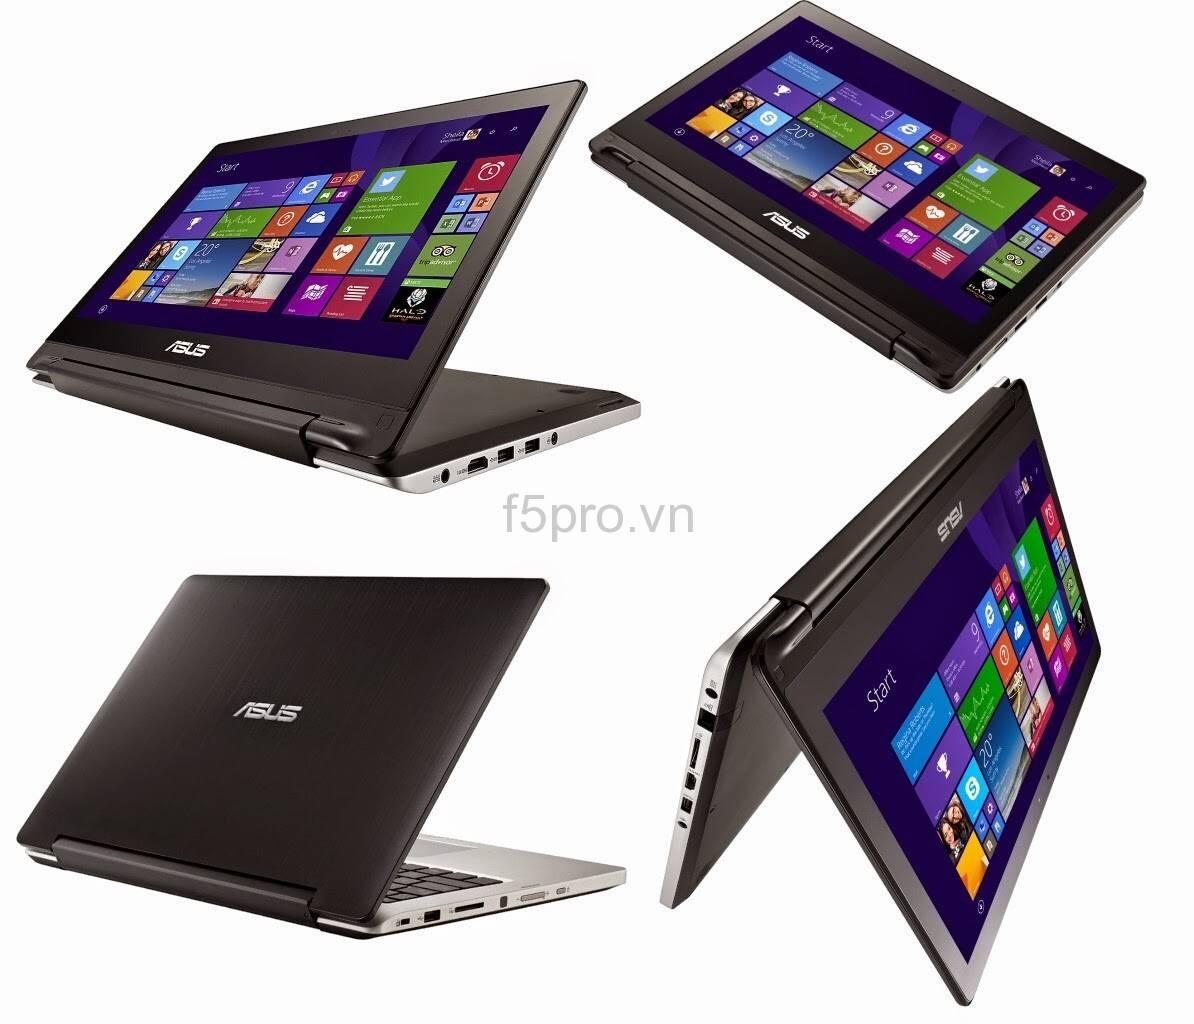 Laptop Asus TP500LA-CJ146H - Intel Core i5 5200U 2.2Ghz, 4GB DDR3, 500GB HDD + 24GB SSD, Intel HD Graphcis 5500